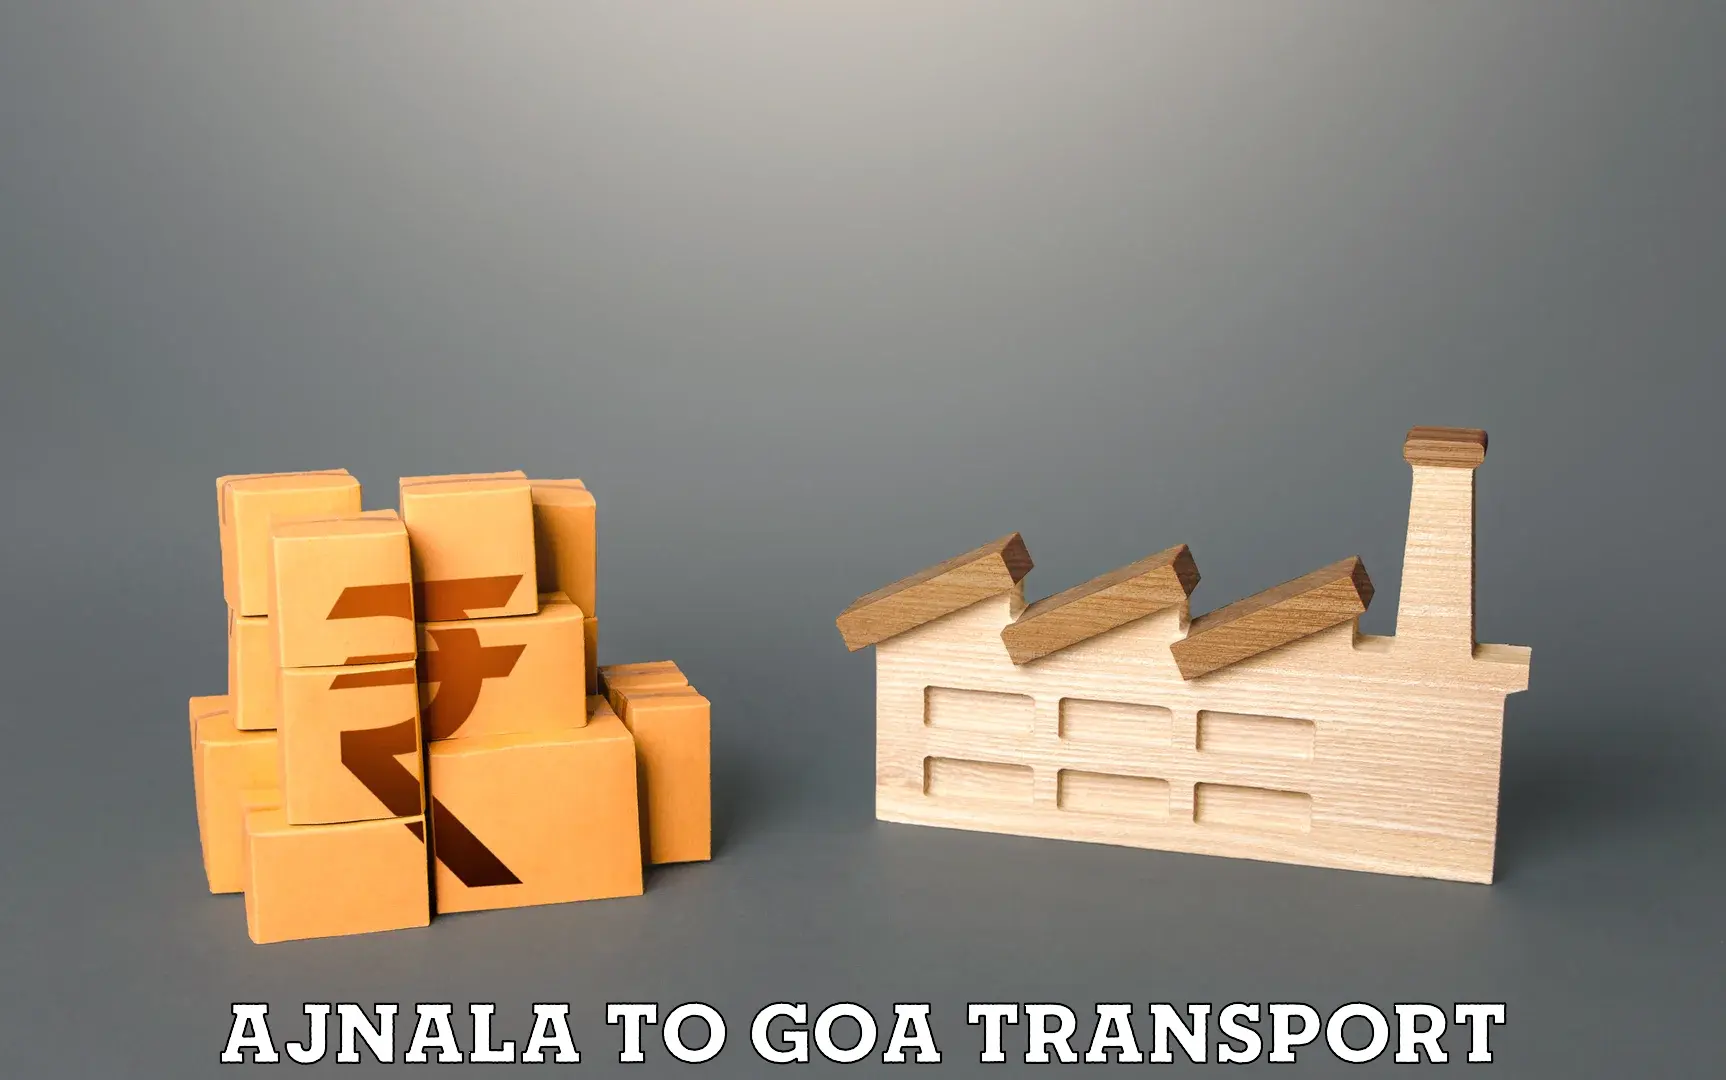 Furniture transport service Ajnala to Vasco da Gama